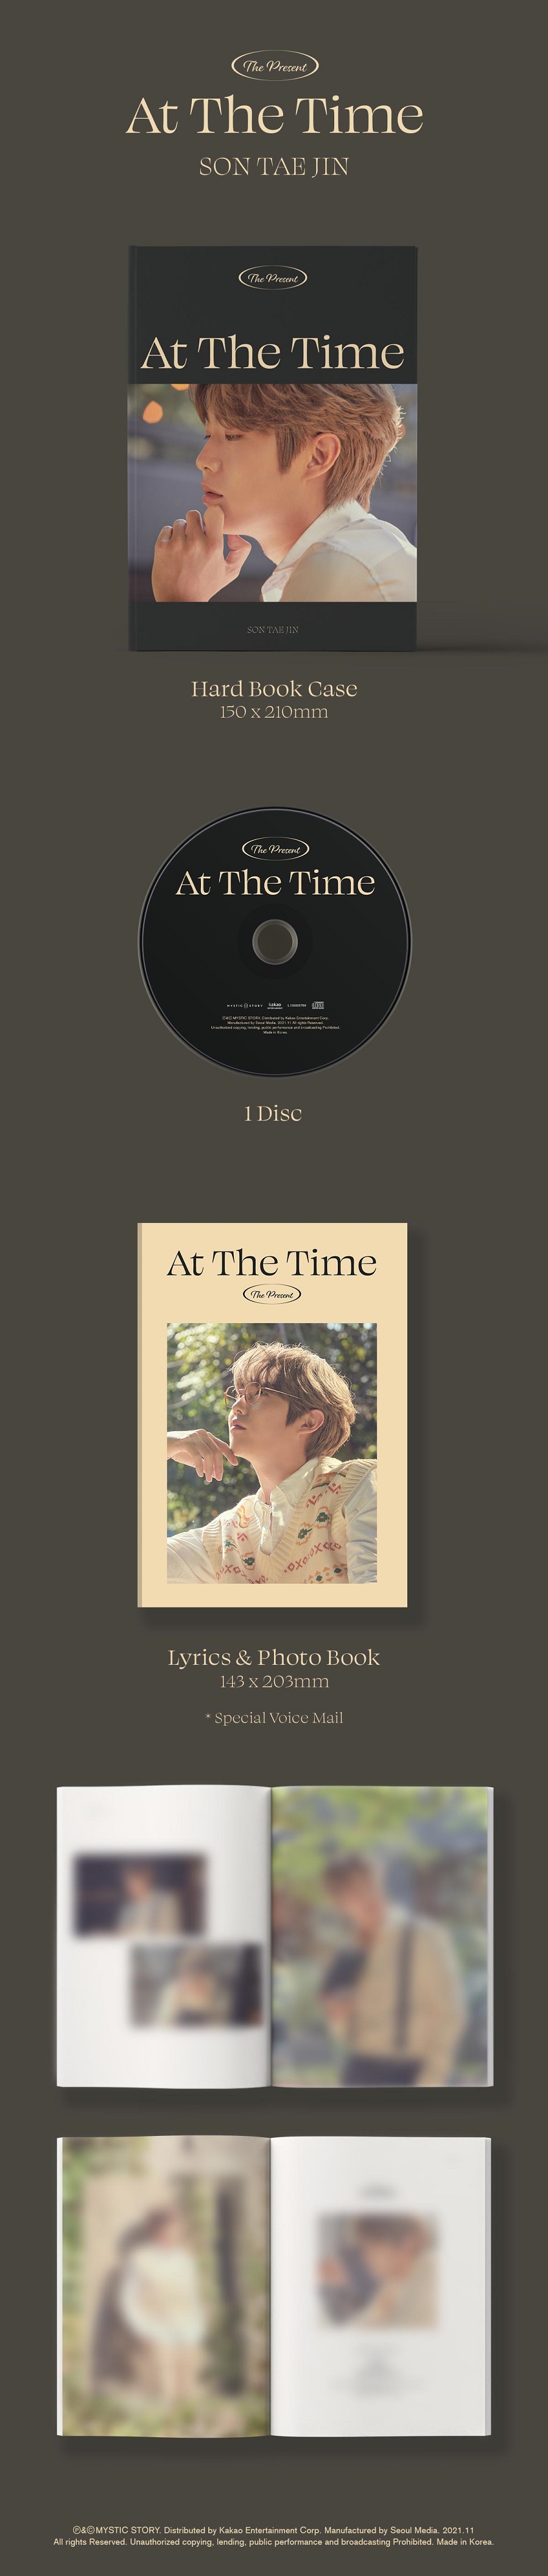 손태진(SON TAE JIN) - The Present ‘At The Time’